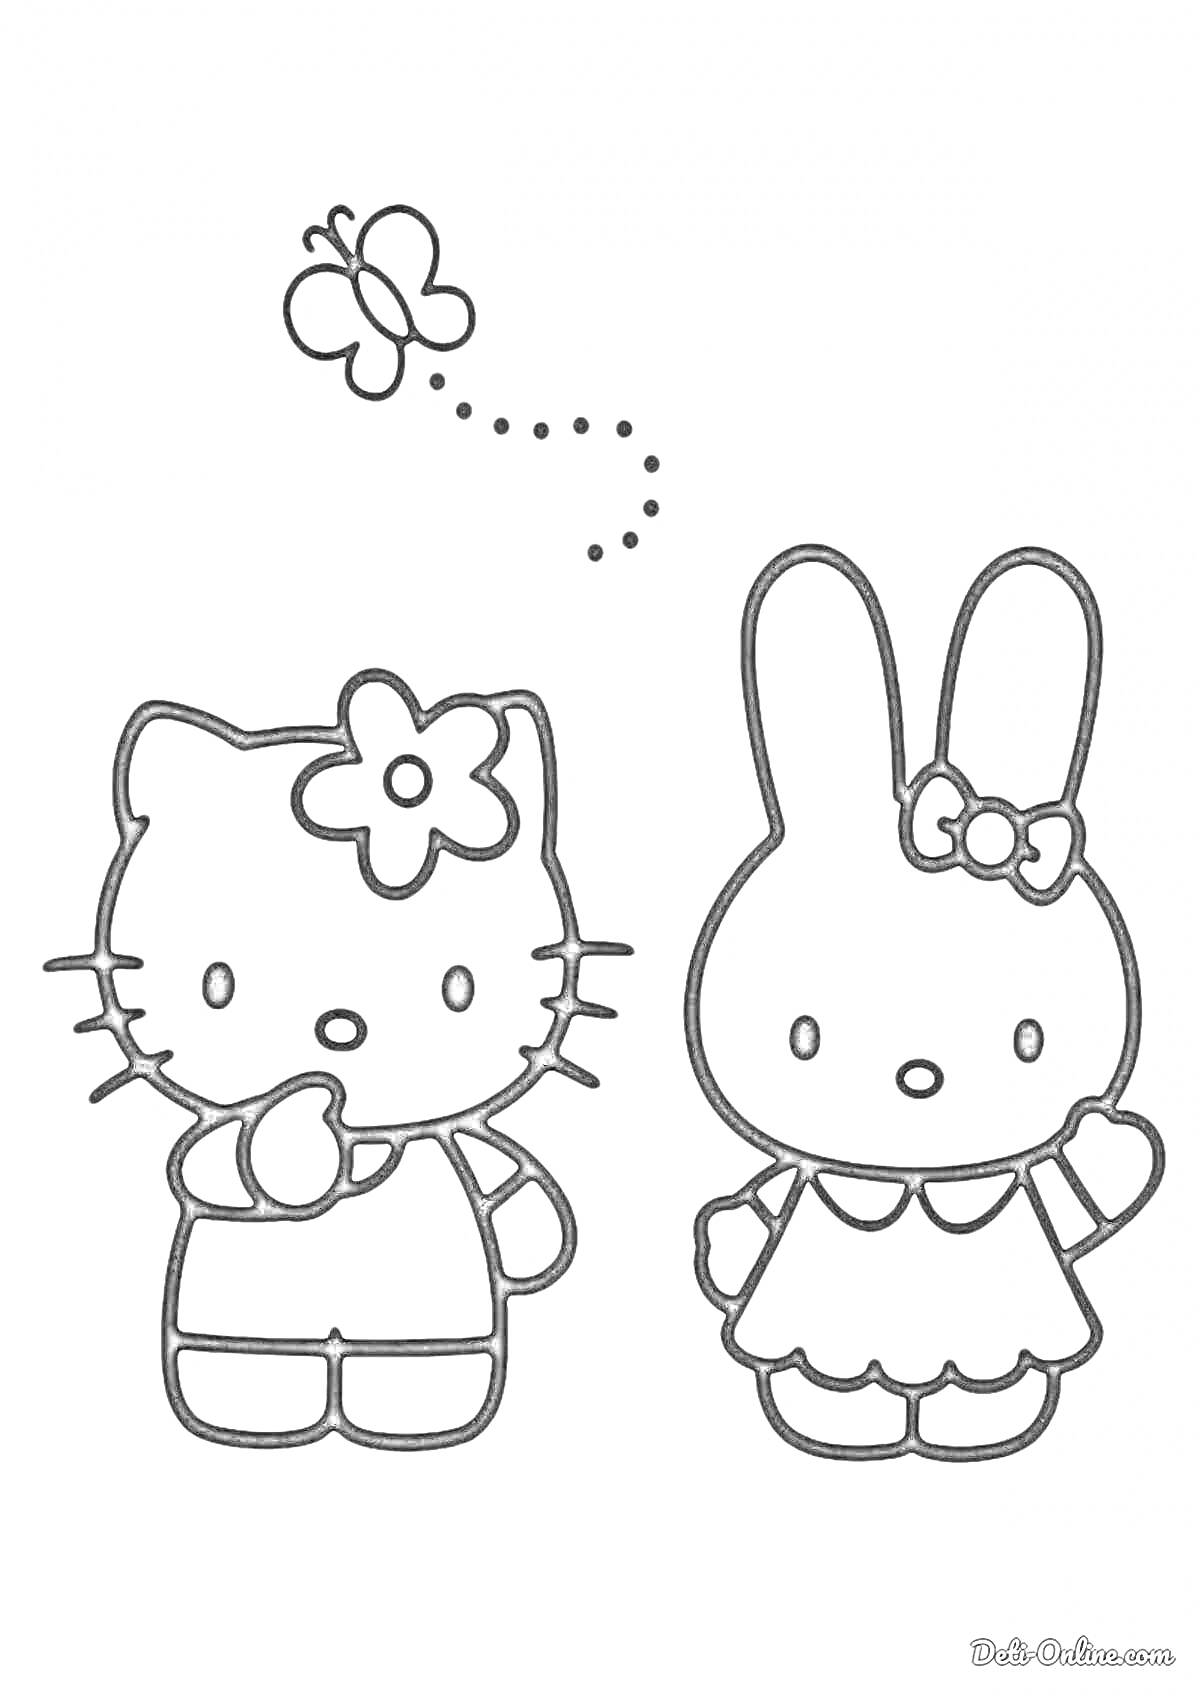 Раскраска Кошечка с цветочком на голове, кролик с бантом и бабочка